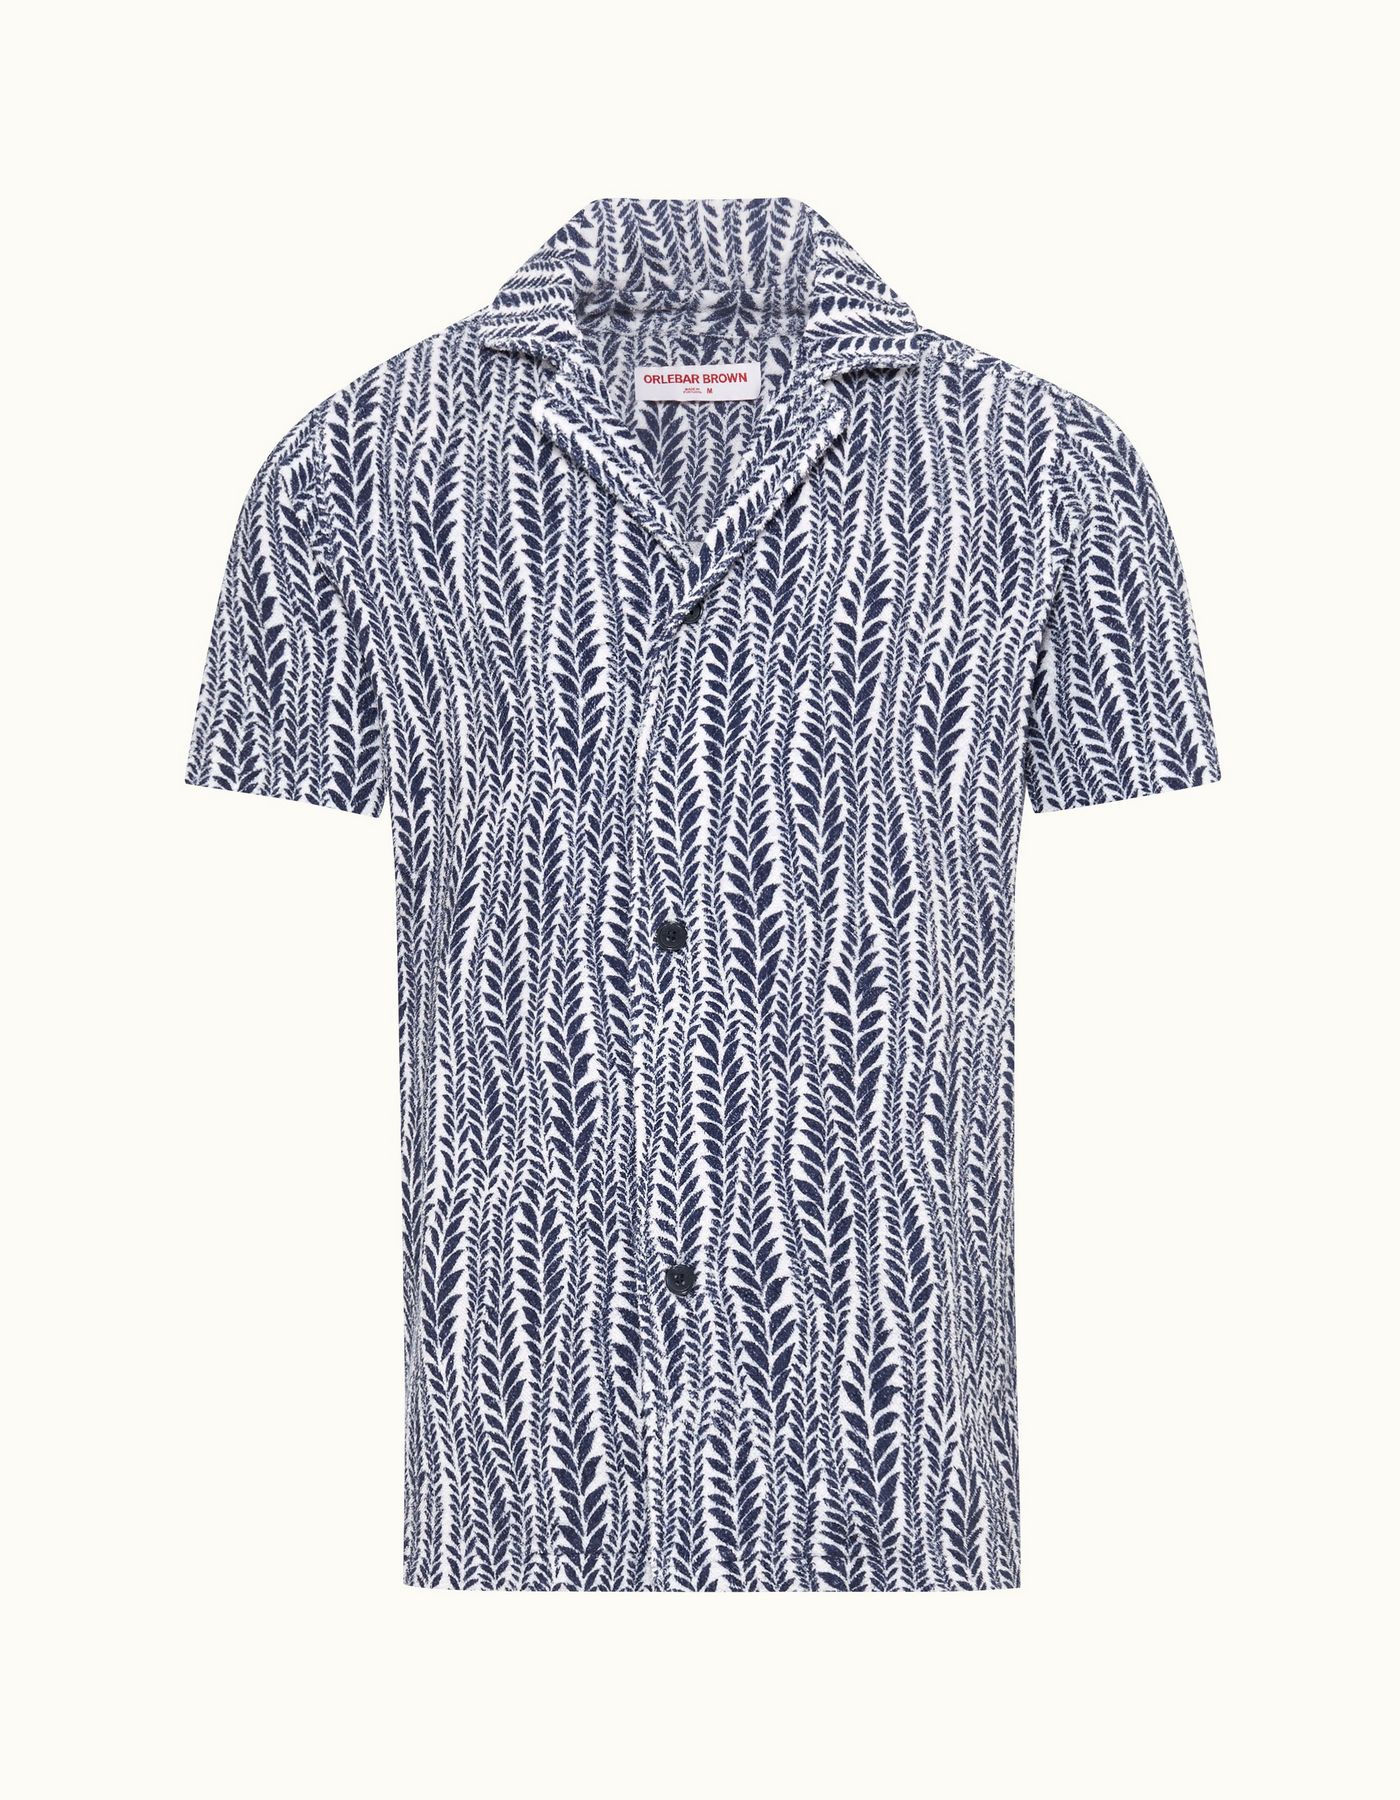 Howell - Mens White/Lagoon Blue Fern Relaxed Fit Capri Collar Short-Sleeve Shirt